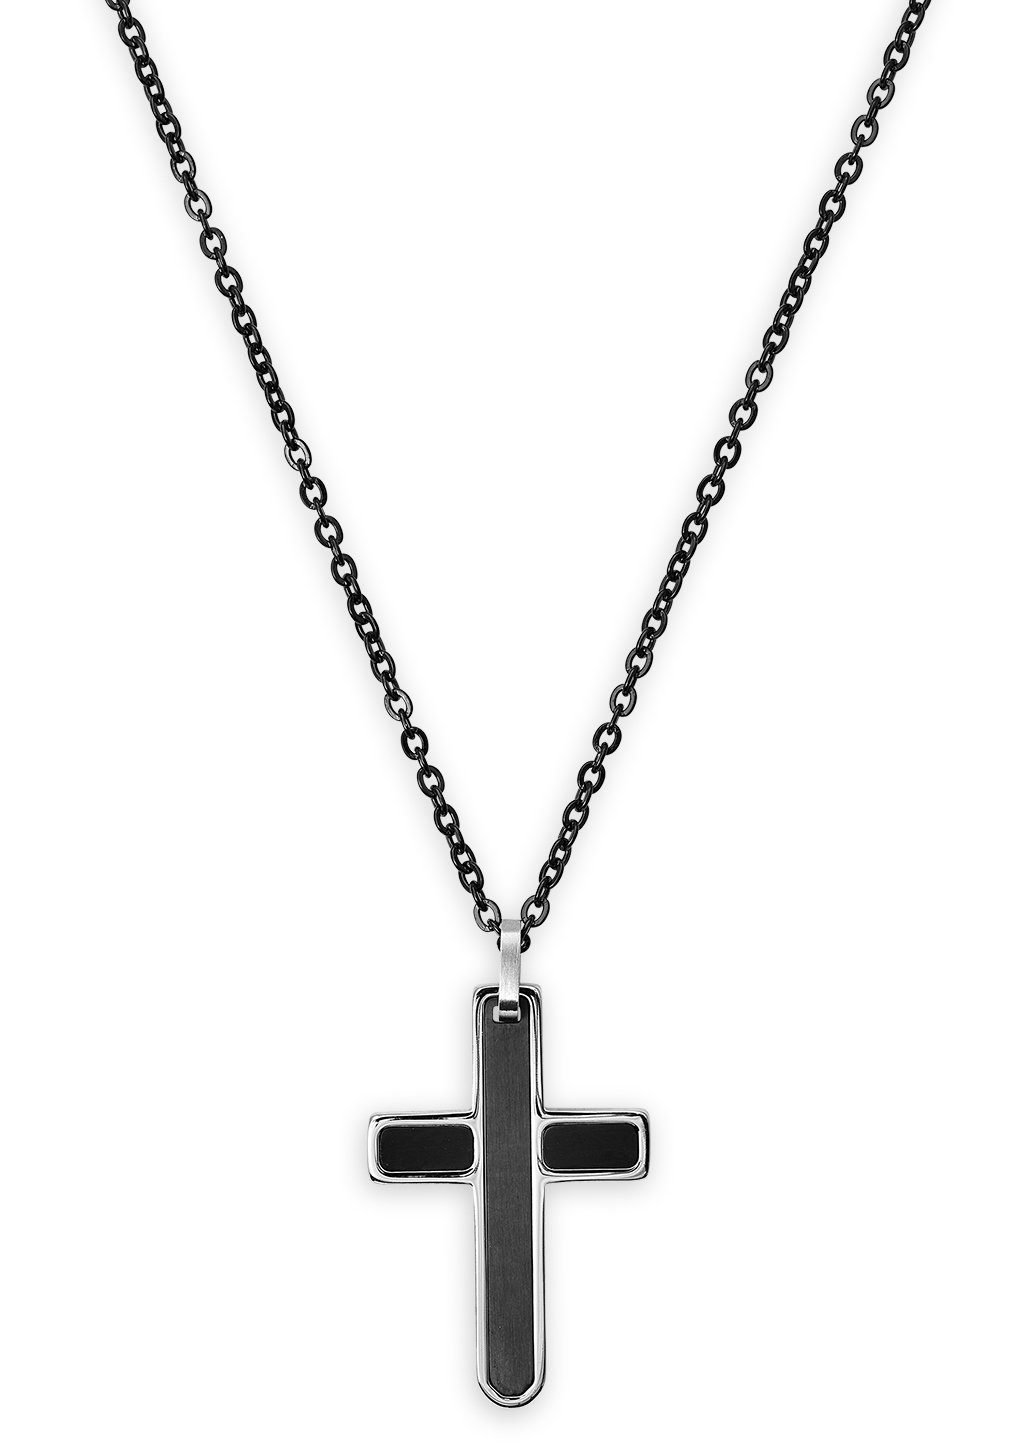 【Empfehlung】 XENOX Kette mit EDEN X3968 ELEMENTS Anhänger schwarz Halskette, Kreuz